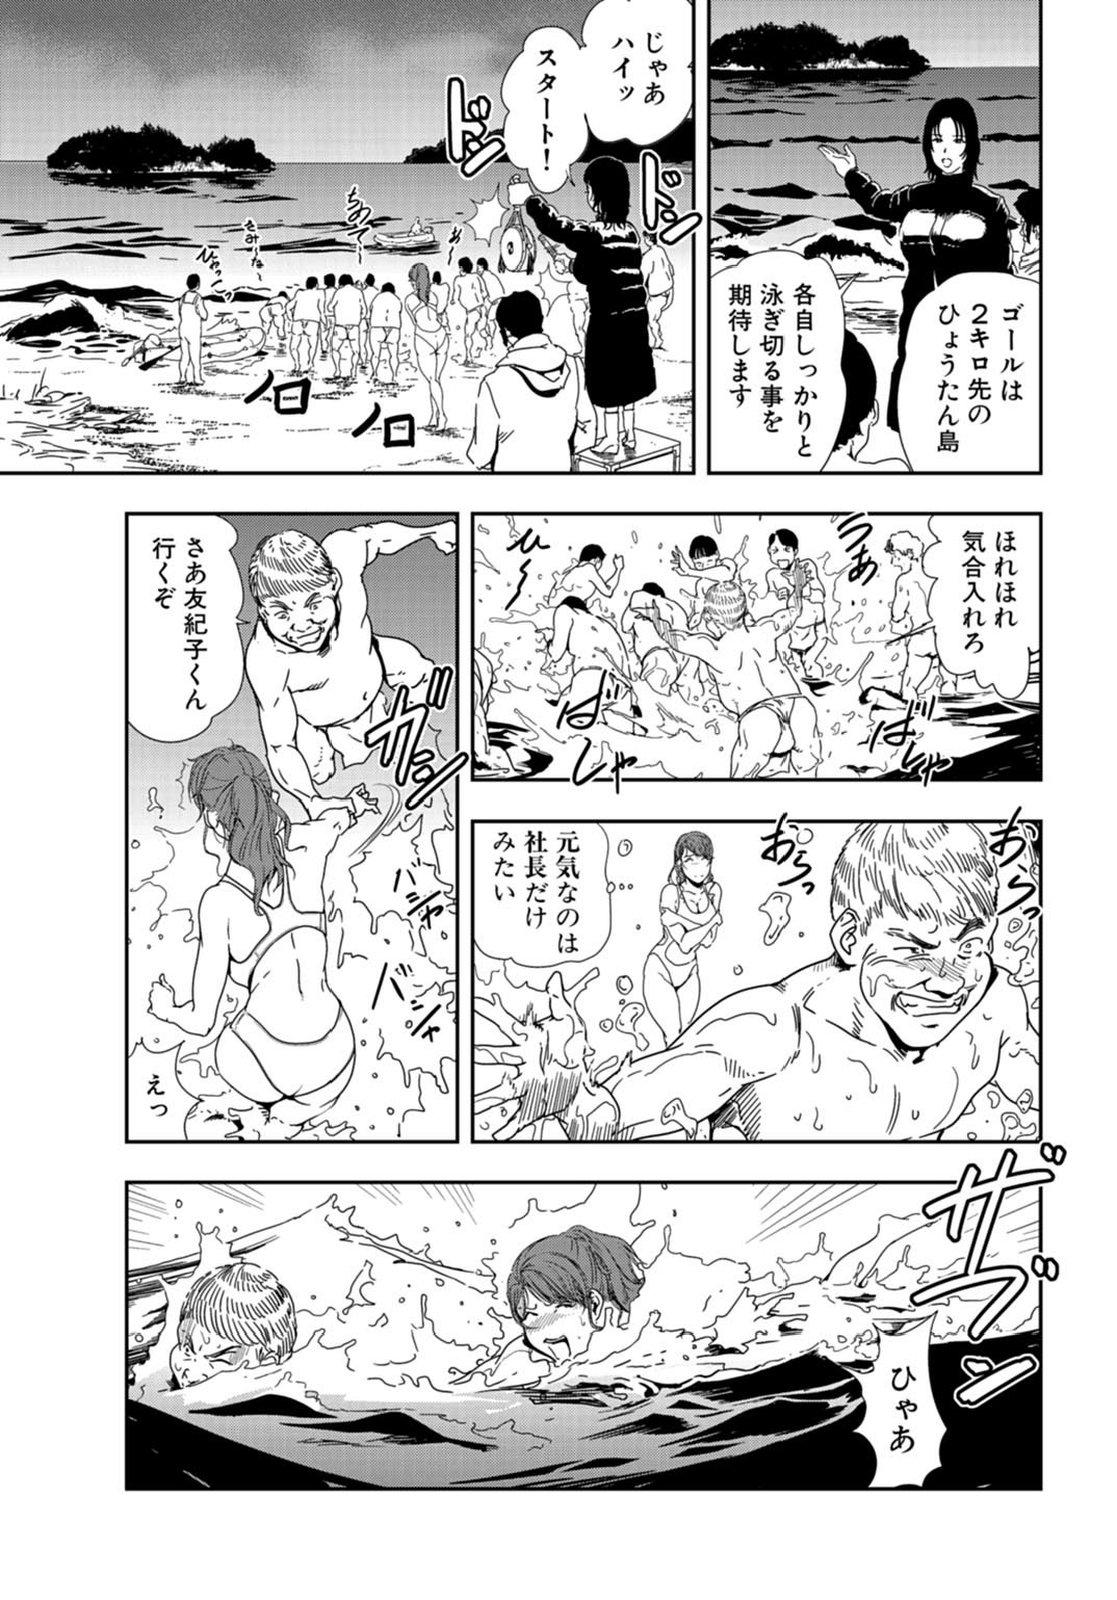 Caught Nikuhisyo Yukiko 22 Whipping - Page 8